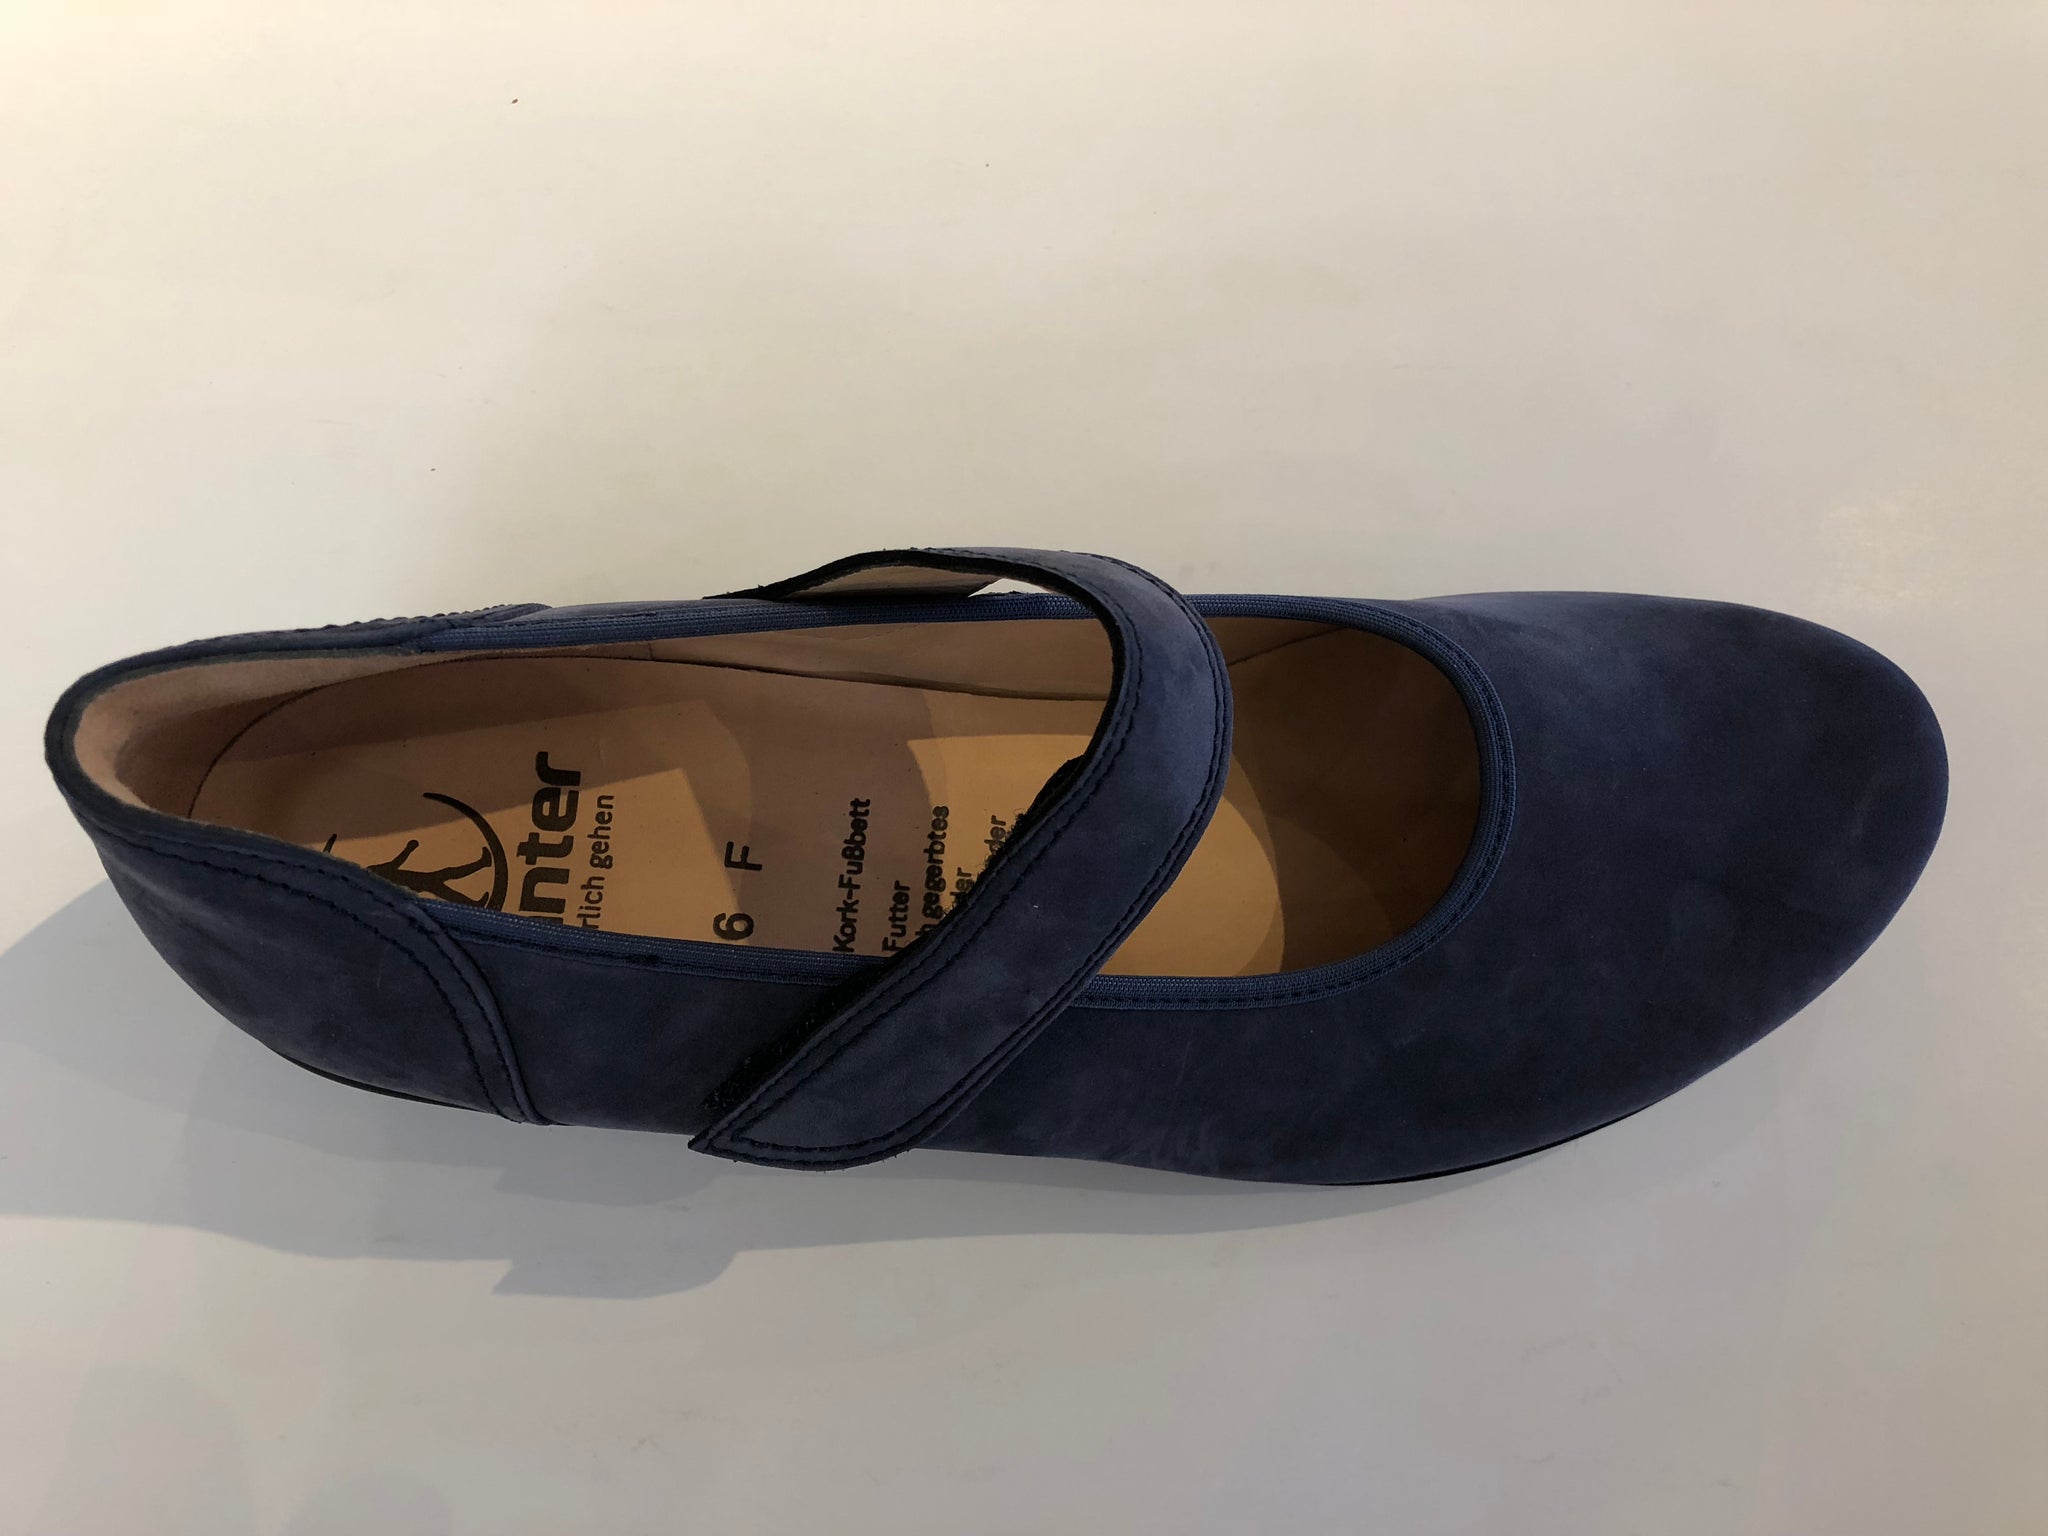 Fiona 5432 – Dorfer Shoes